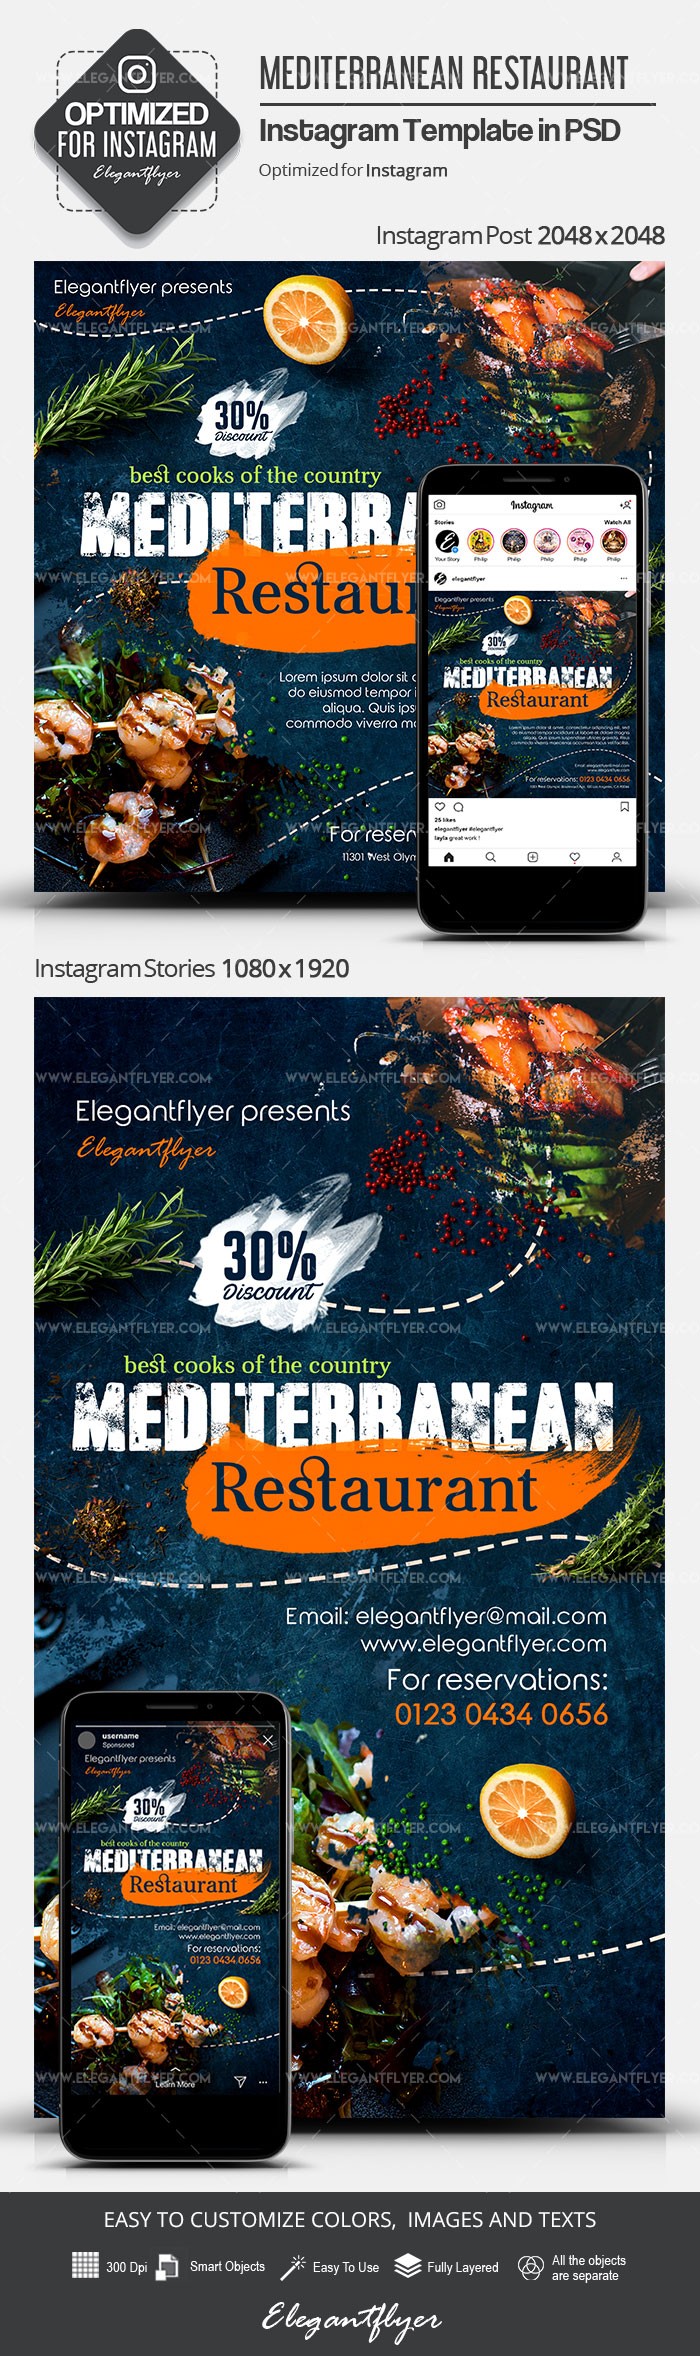 Mediterranean Restaurant Instagram by ElegantFlyer